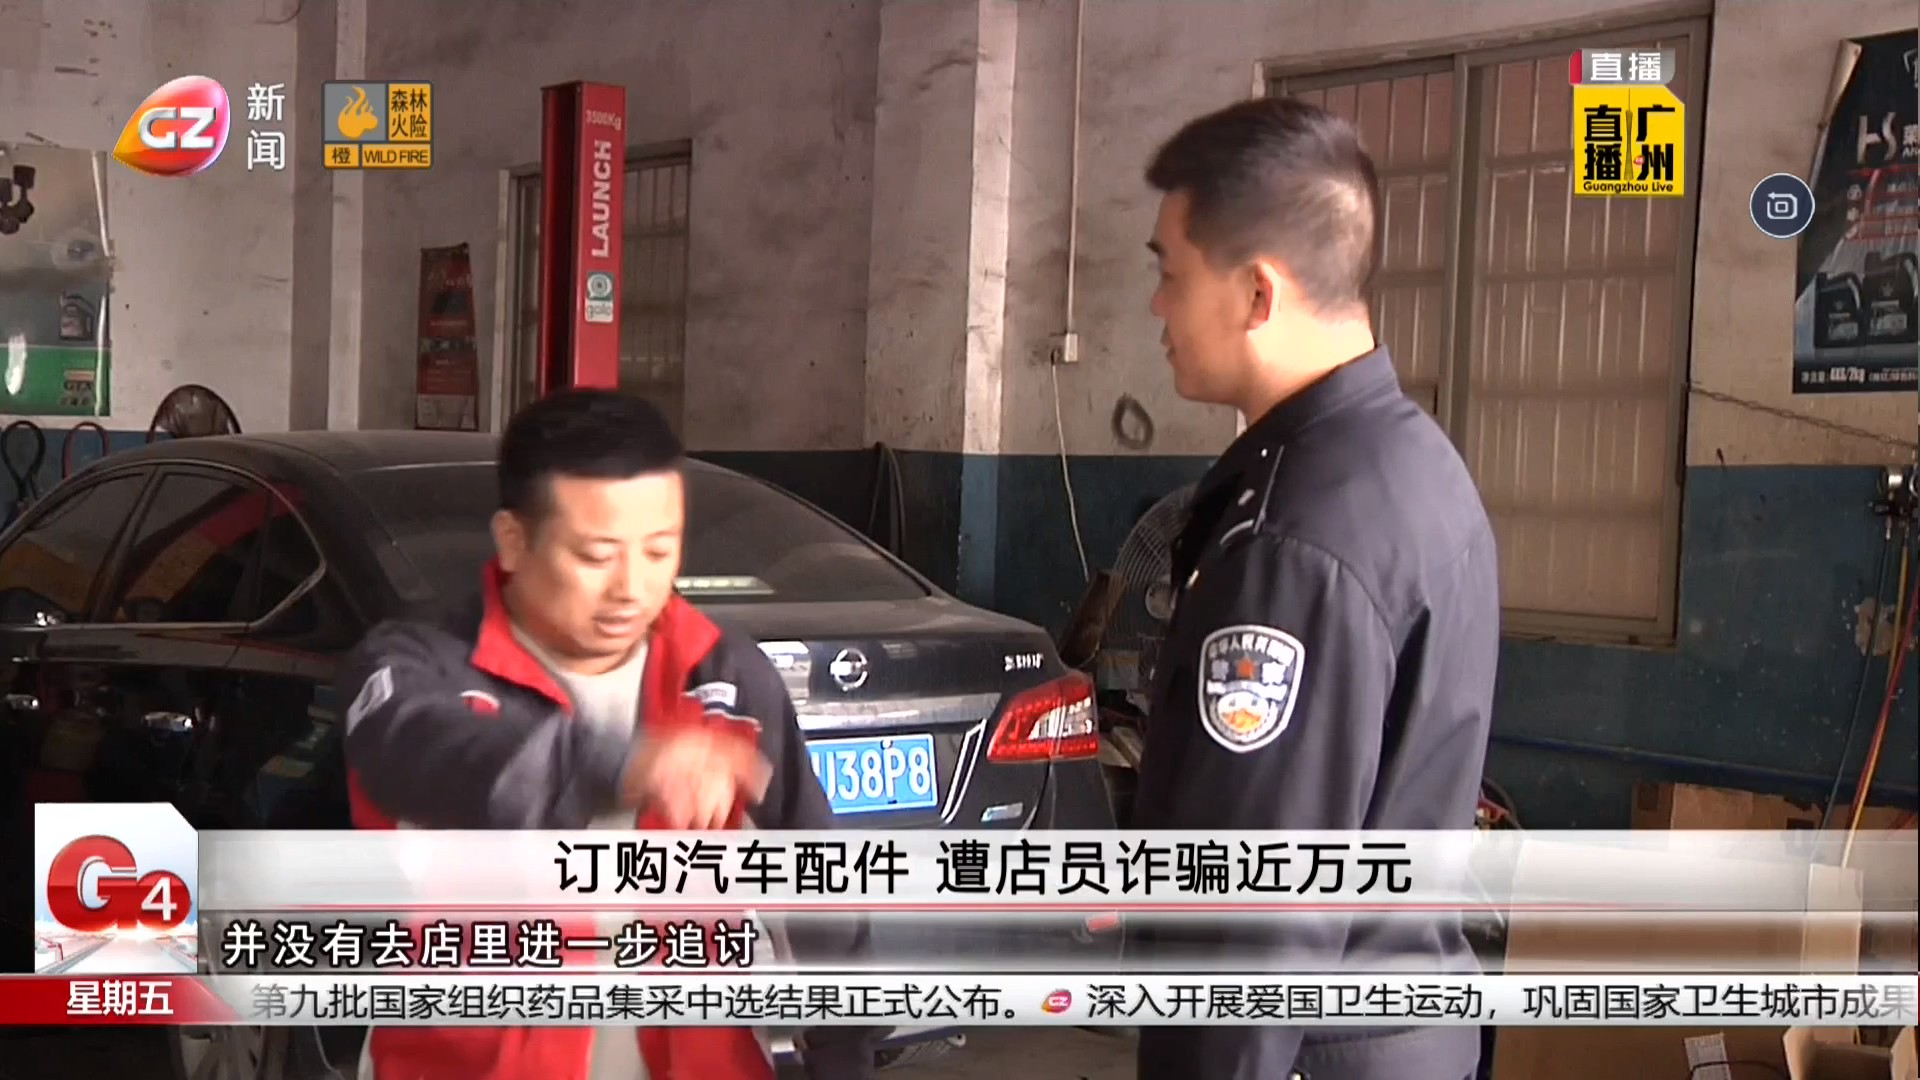 广州台新闻频道 G4出动 订购汽车配件 遭店员诈骗近万元